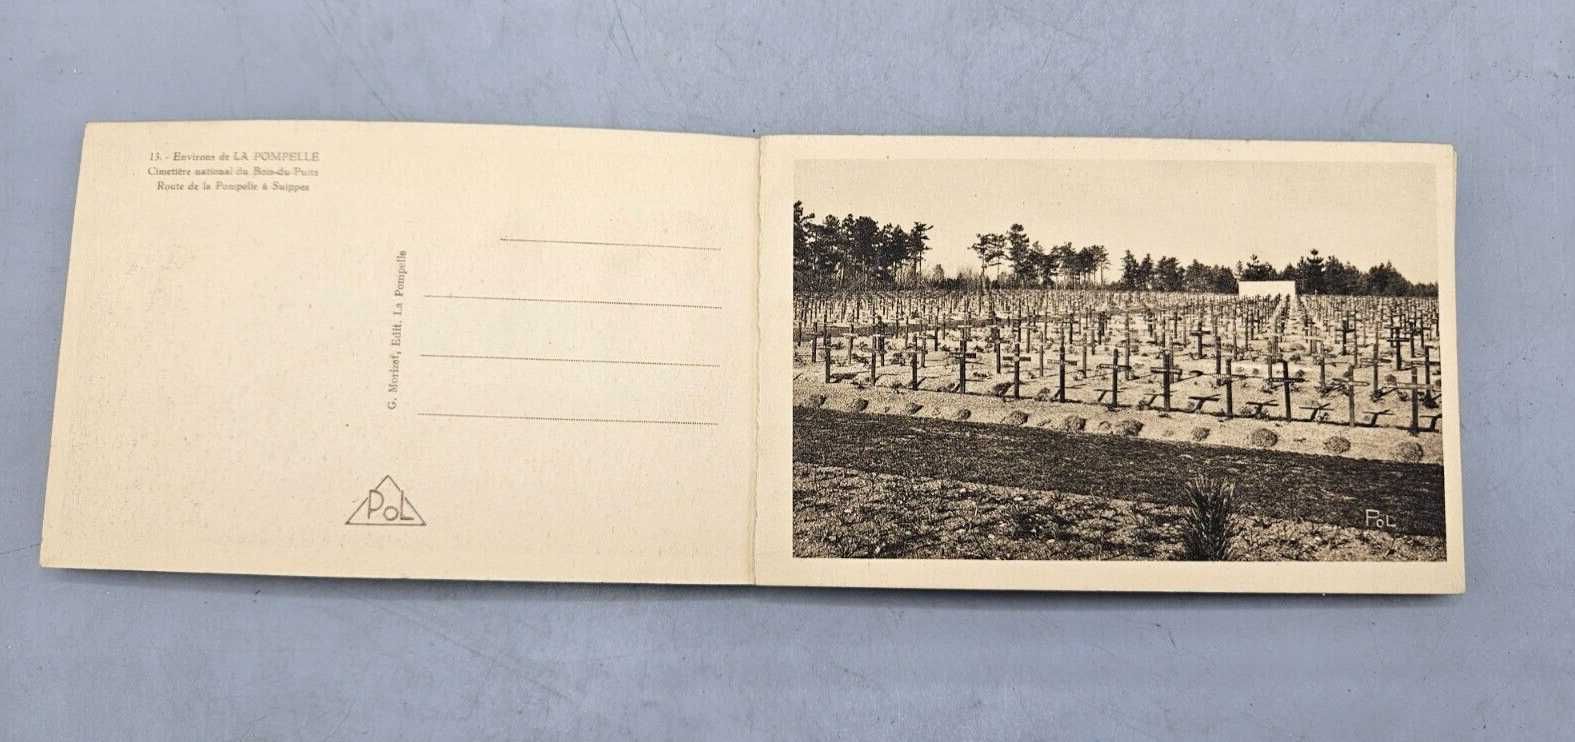 WW1 - Cărți Poștale Franceze - Fort De La Pompelle